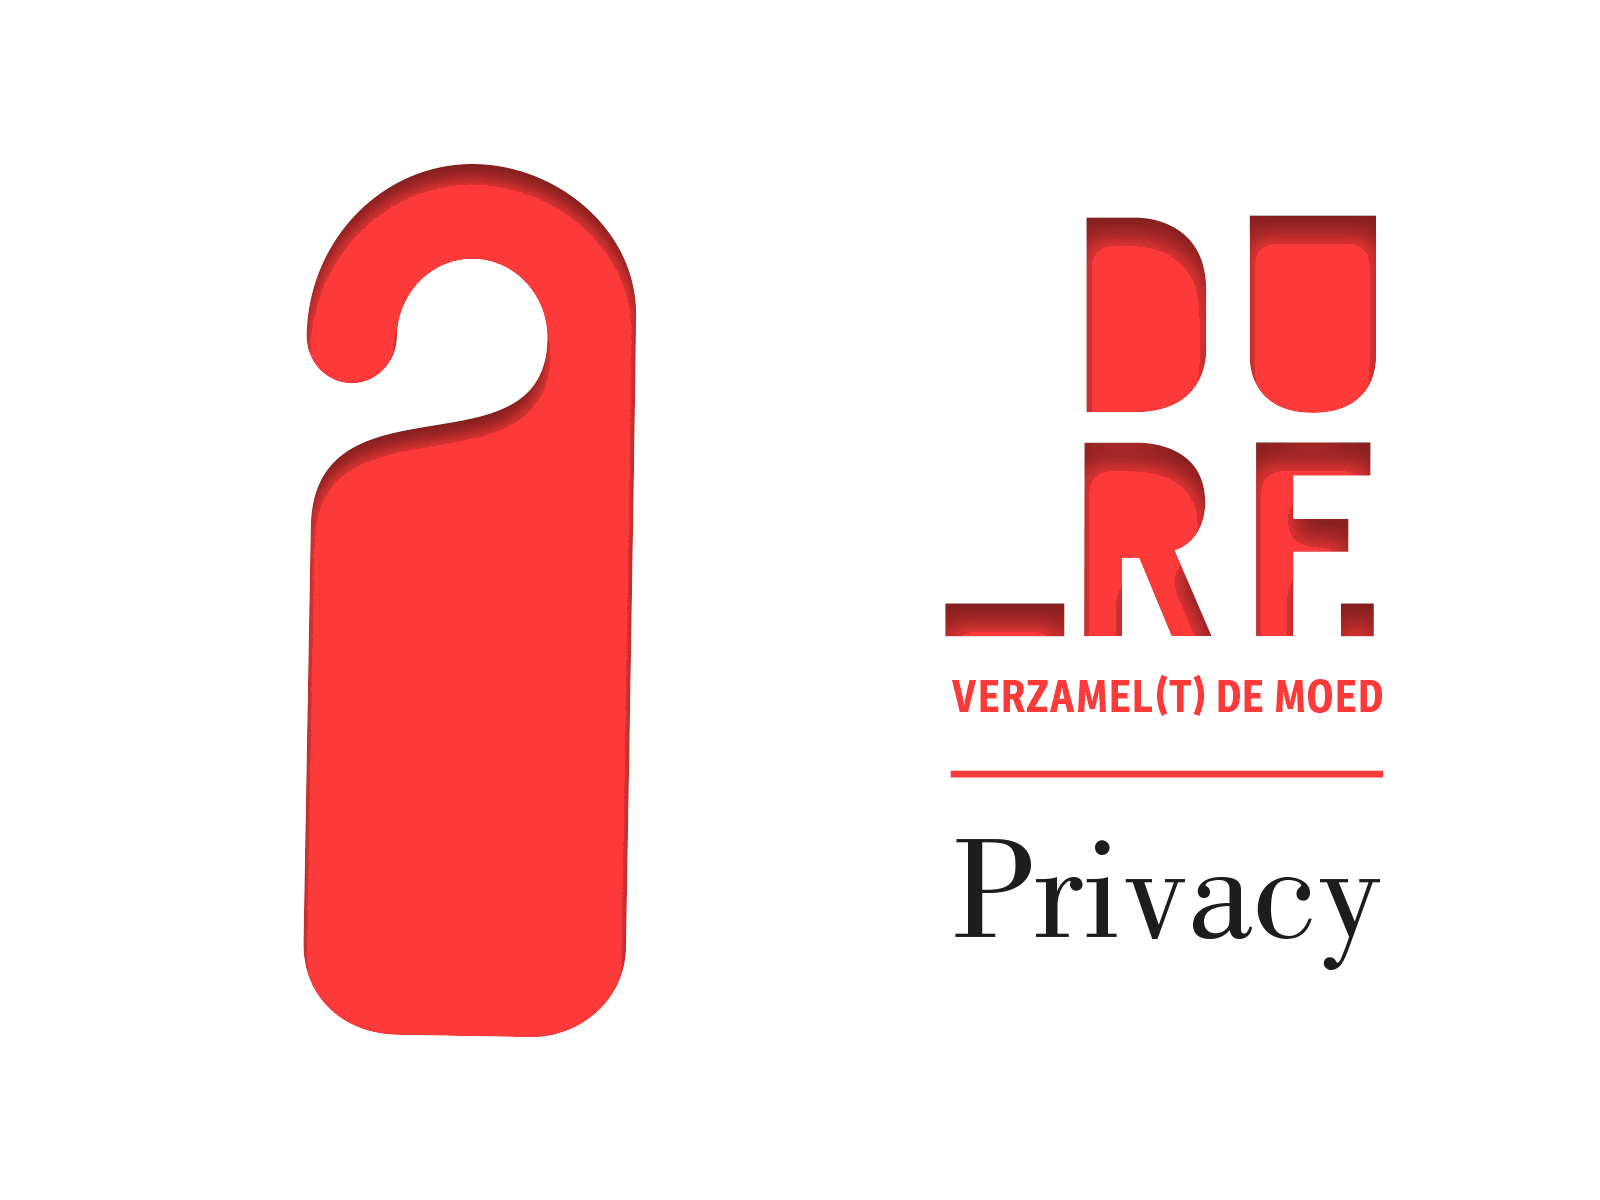 DURF-Privacy-vooraankondiging-01 kopie.gif